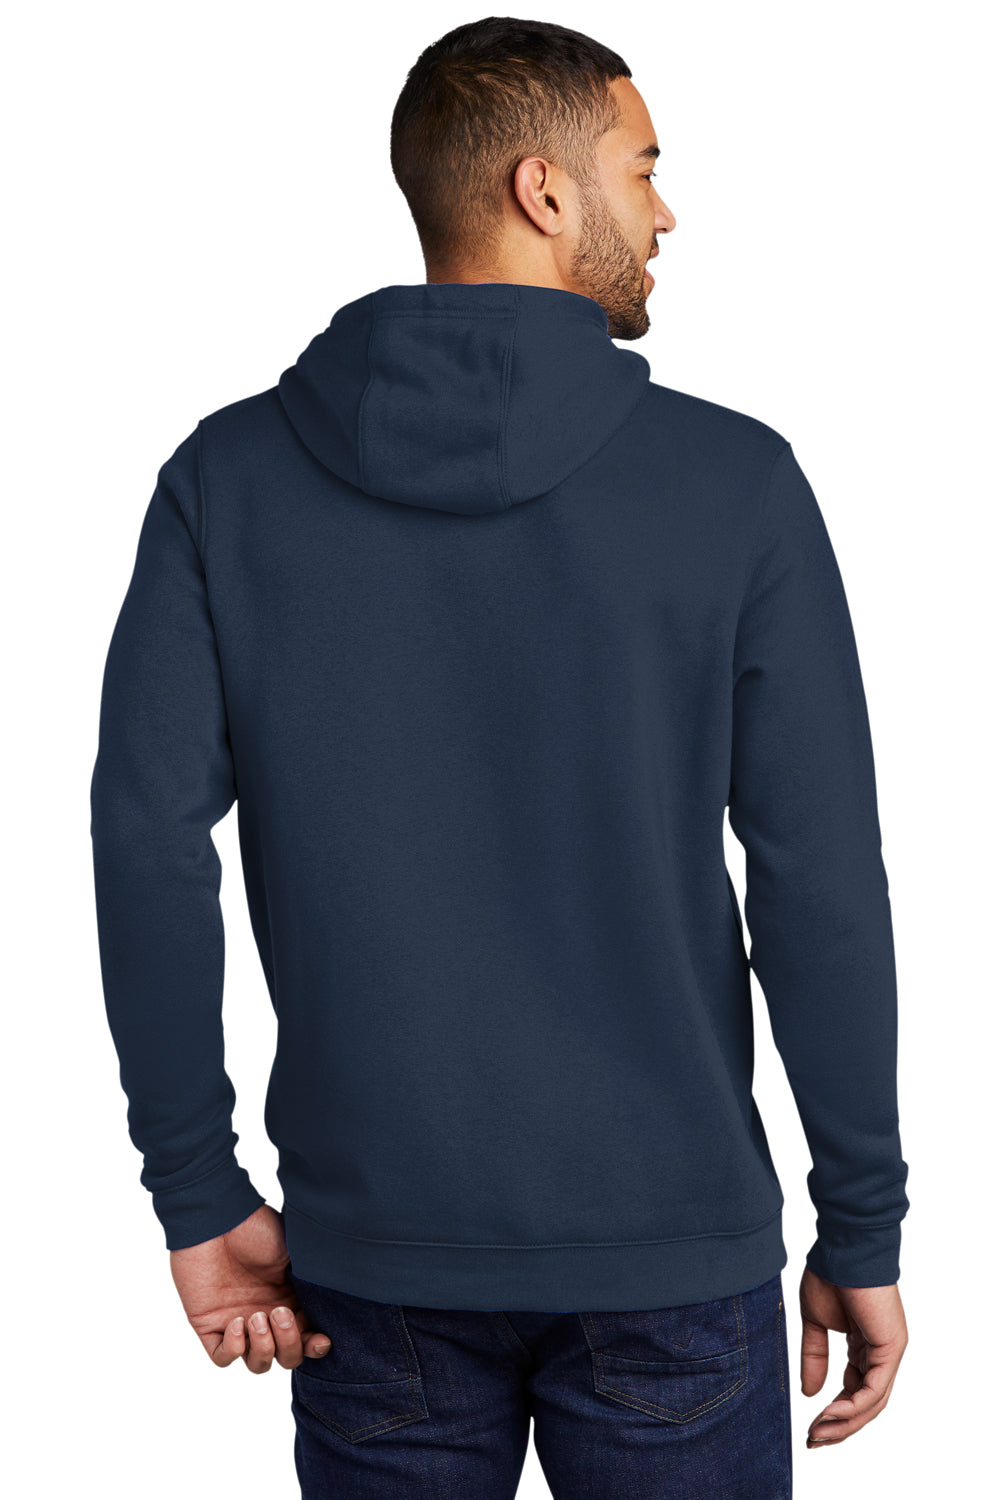 Nike CJ1611 Mens Club Fleece Hooded Sweatshirt Hoodie Navy Blue Model Back